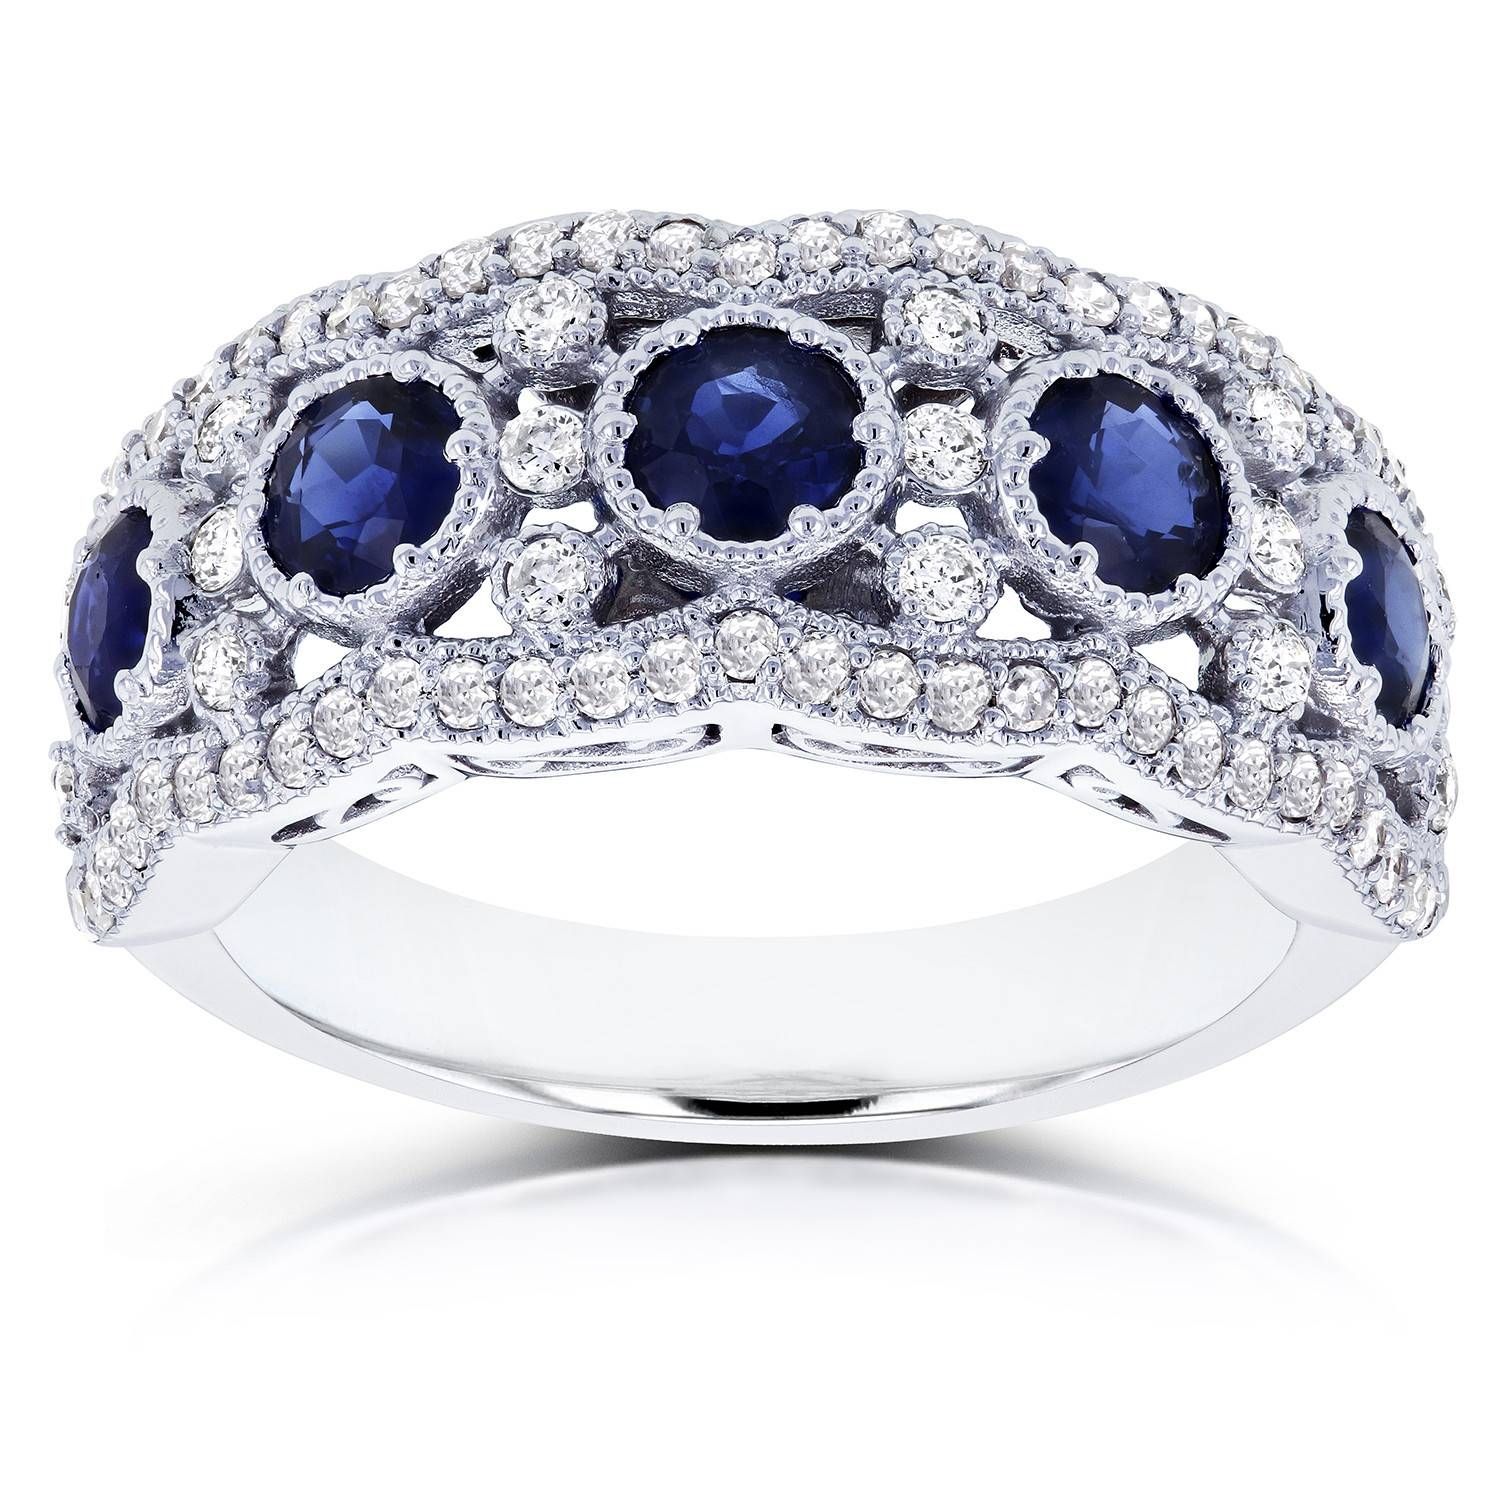 Sapphire And Diamond Anniversary Ring 10k White Gold Throughout 2017 Sapphire And Diamond Anniversary Rings (View 12 of 25)